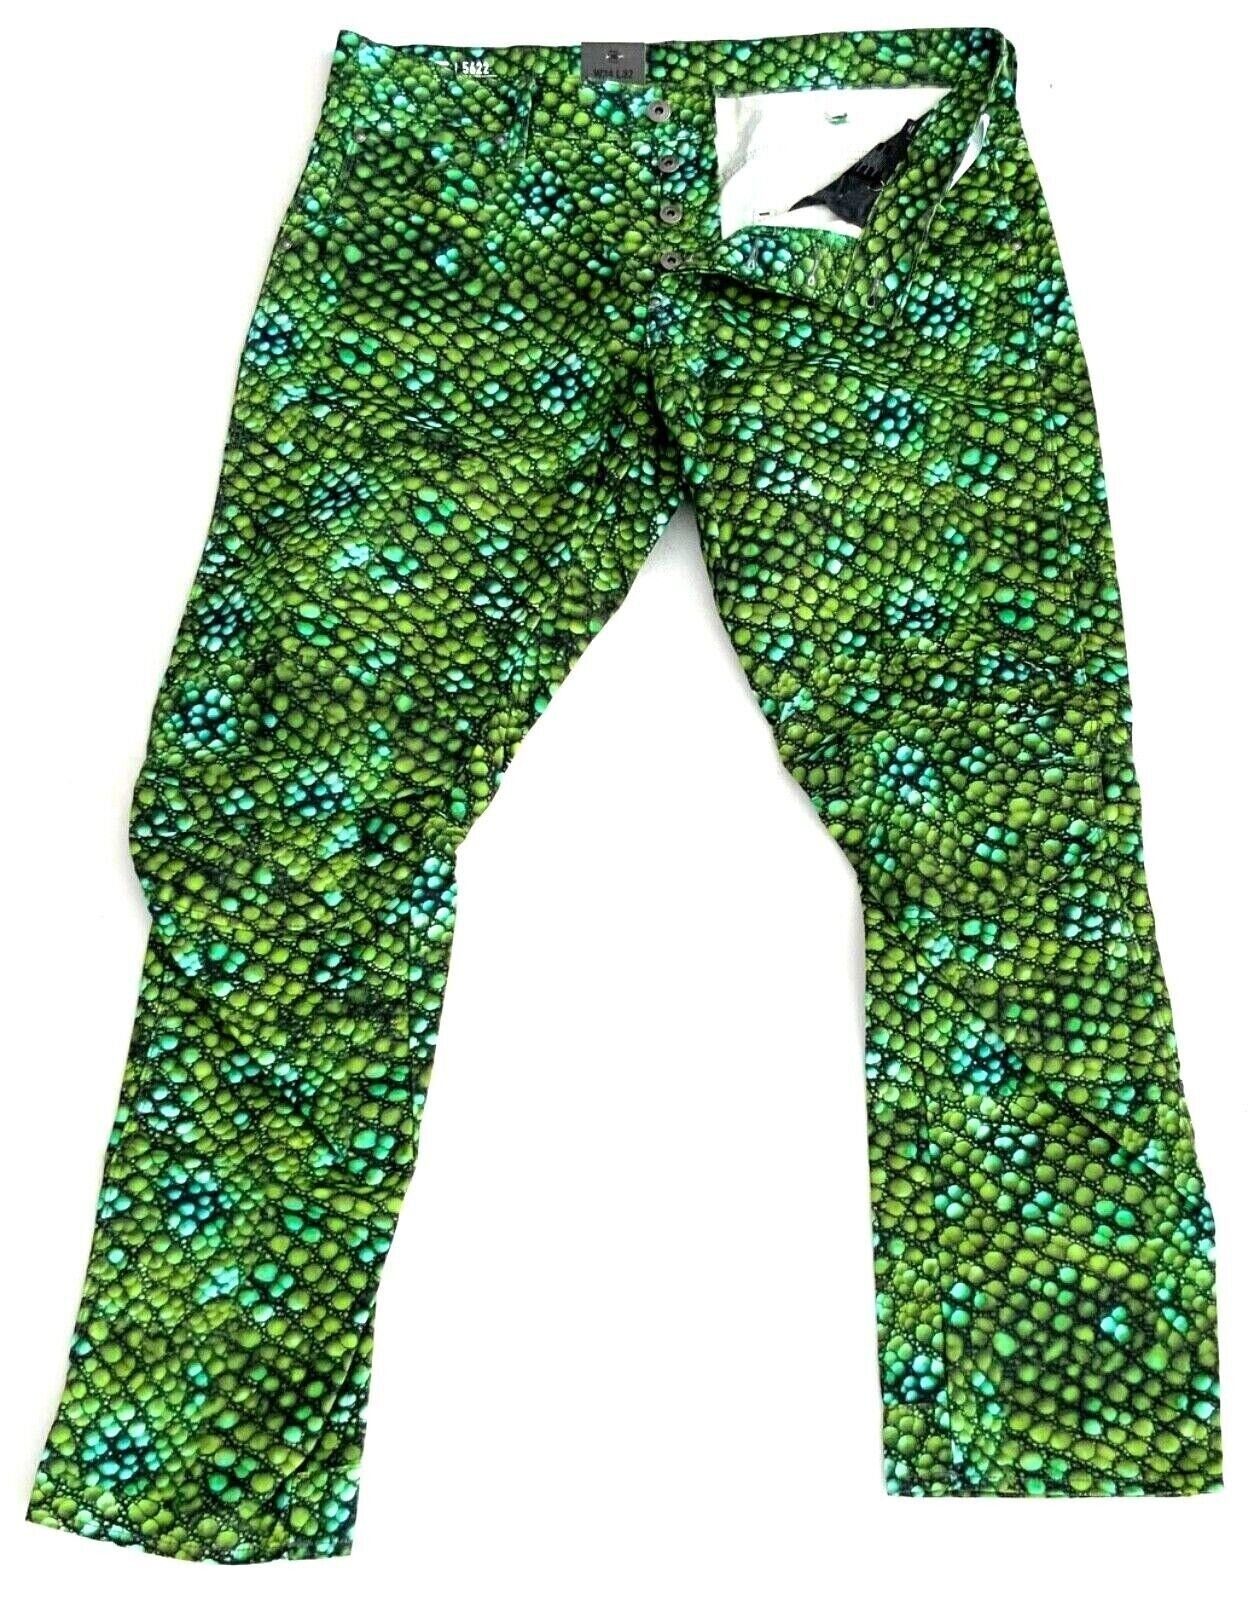 G-Star RAW Tapered-fit-Jeans G-Star Pharrel Williams Elwood X25 5622 3D Tapered 16 Green Iguana Print AO.